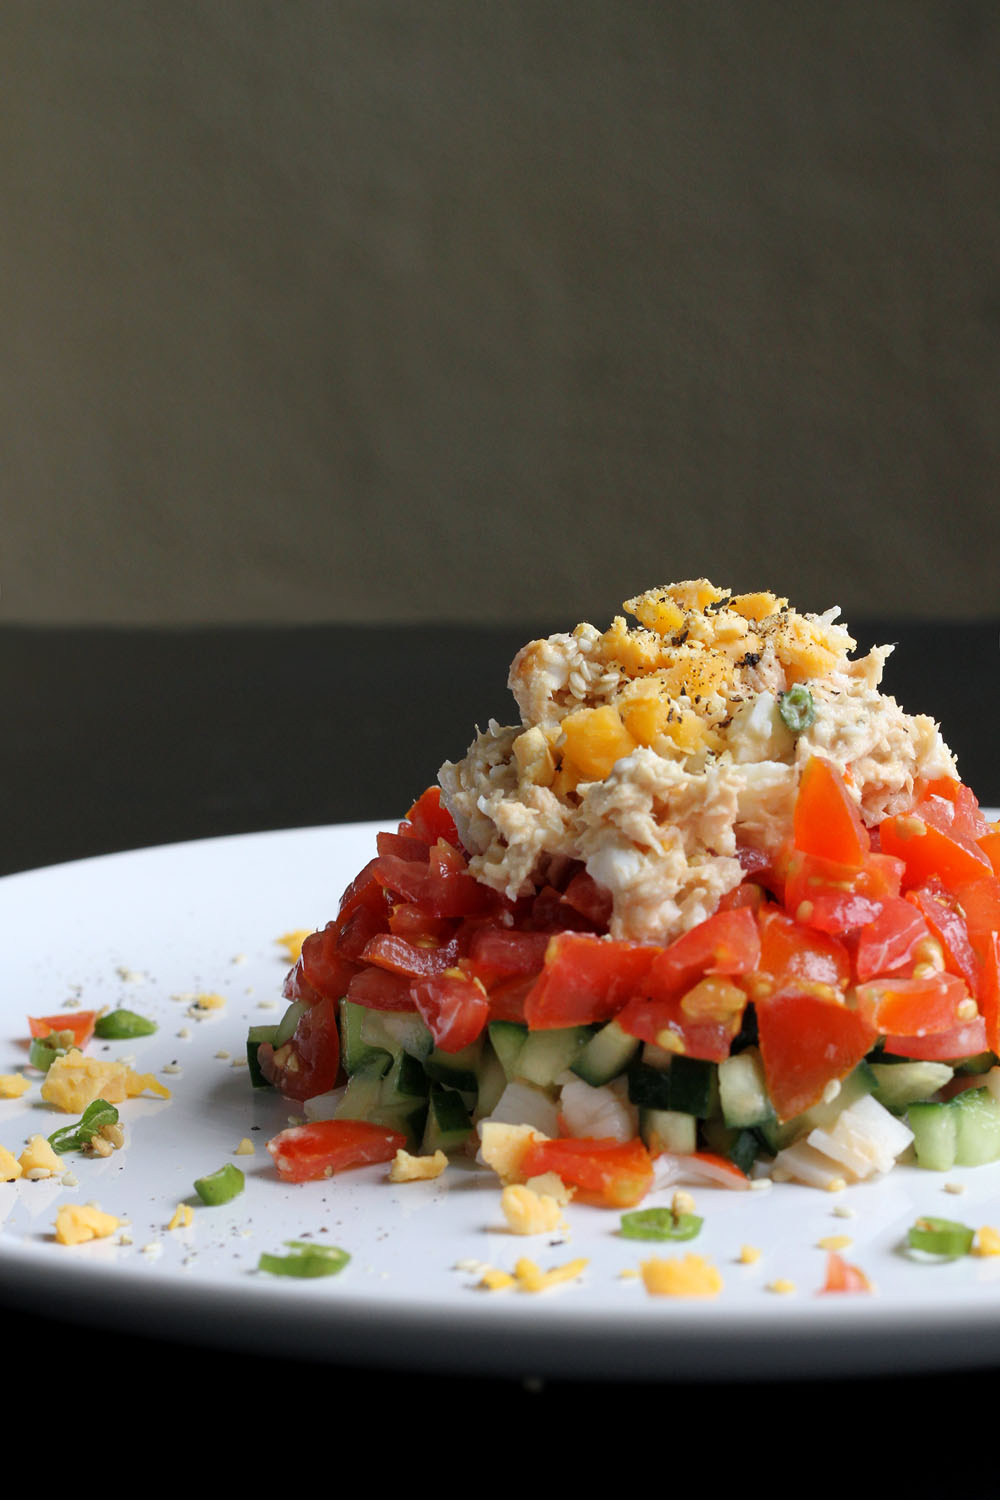 Weekend Kitchen: Our Rainbow Salad